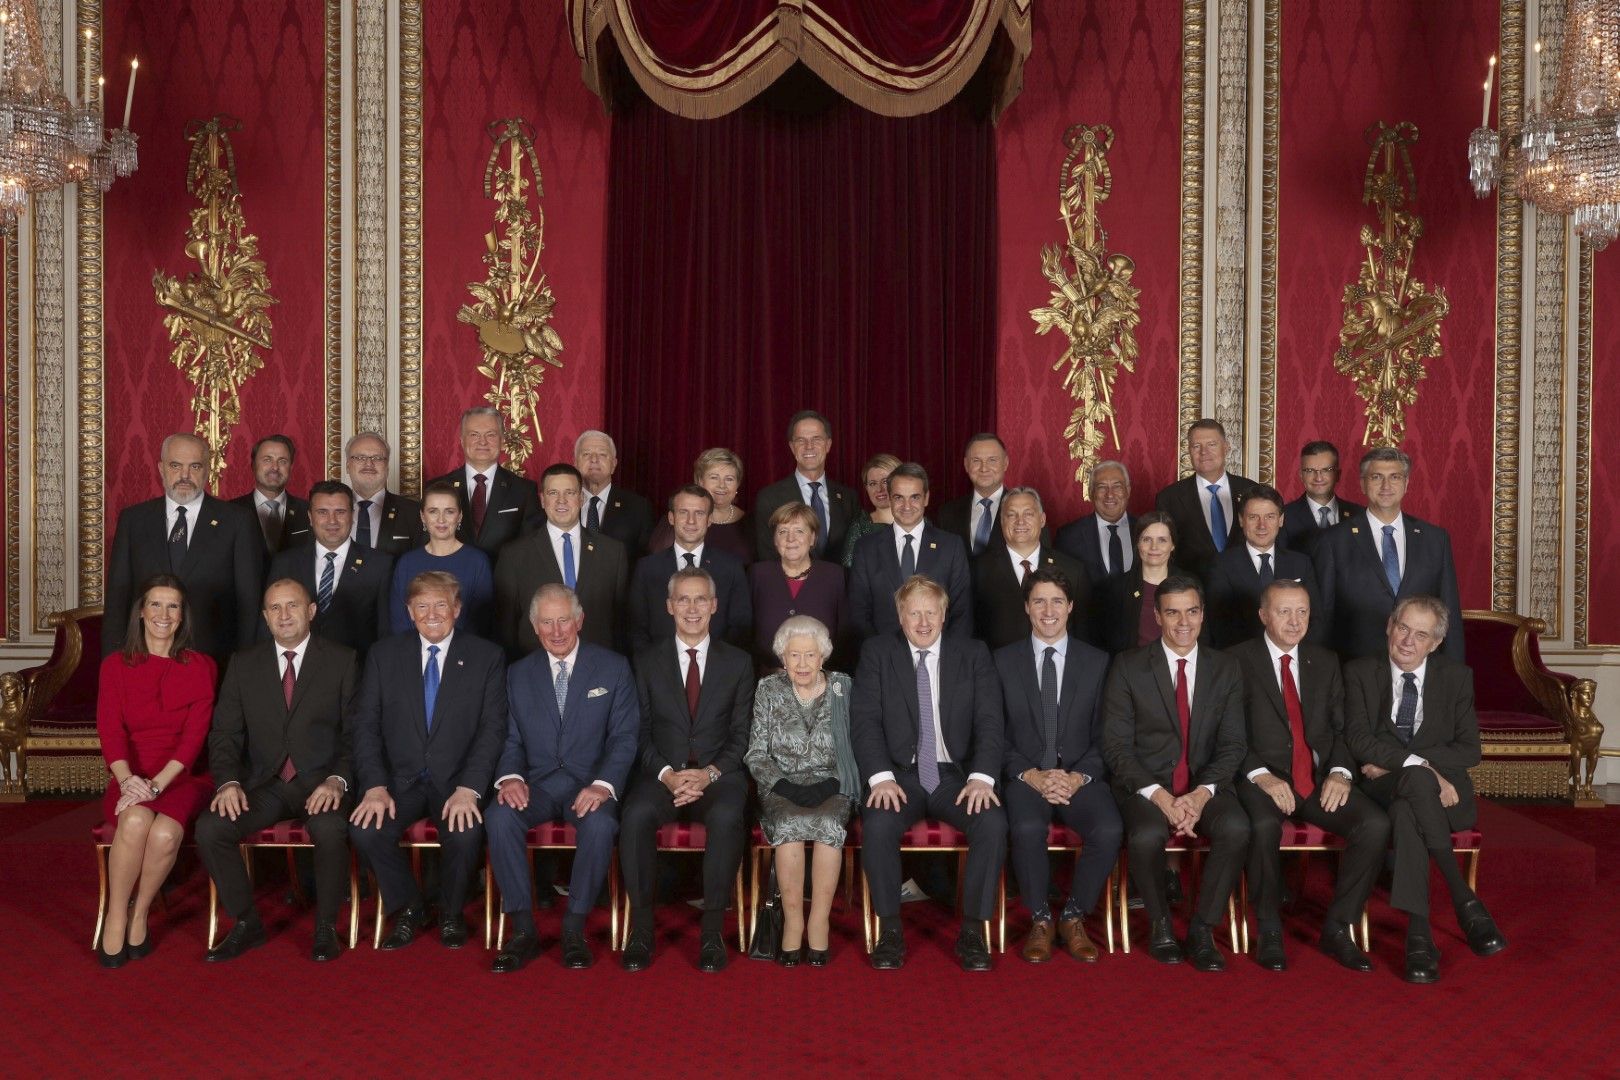 Лидерите на страните от НАТО се събраха на юбилейна среща в Лондон по случай 70-годишнината на алианса. Те бяха приети от кралица Елизабет II